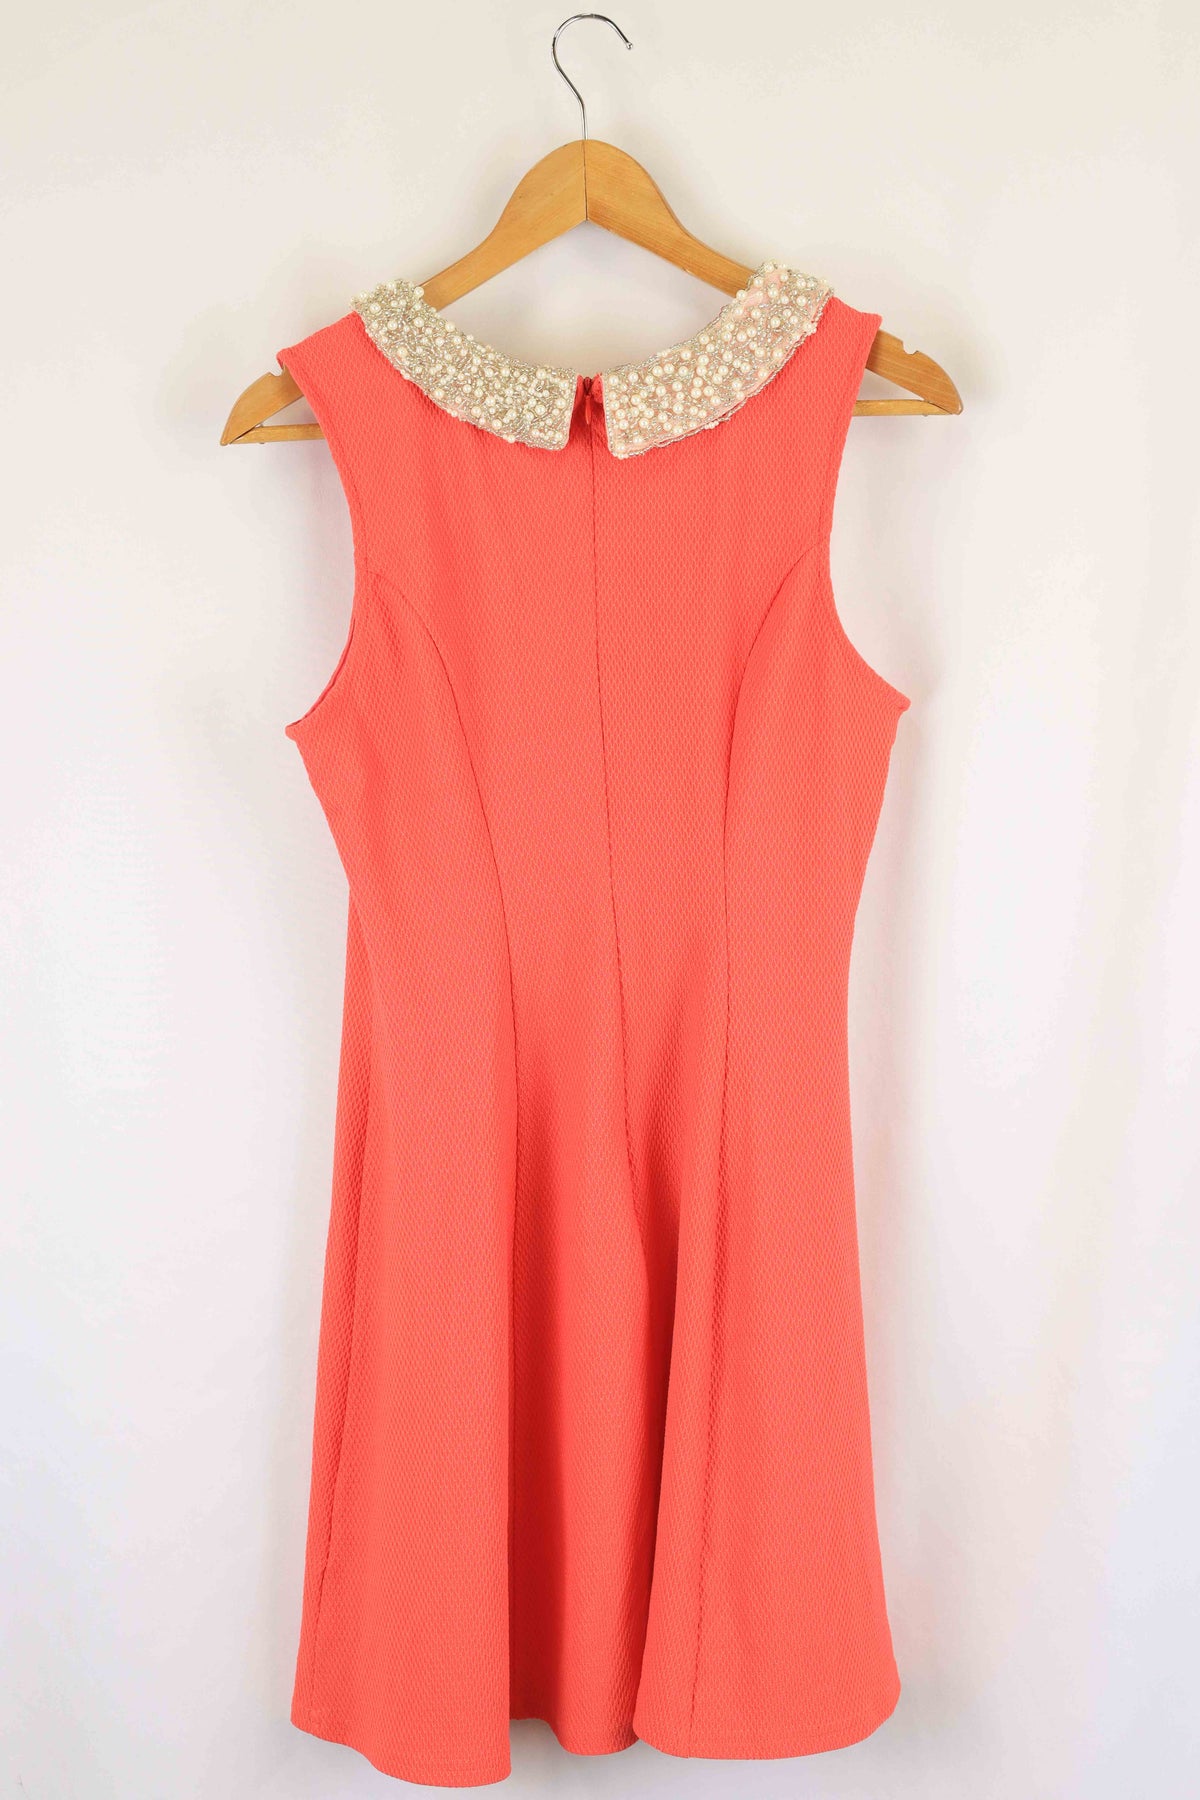 New Look Coral Pink Mini Dress 12